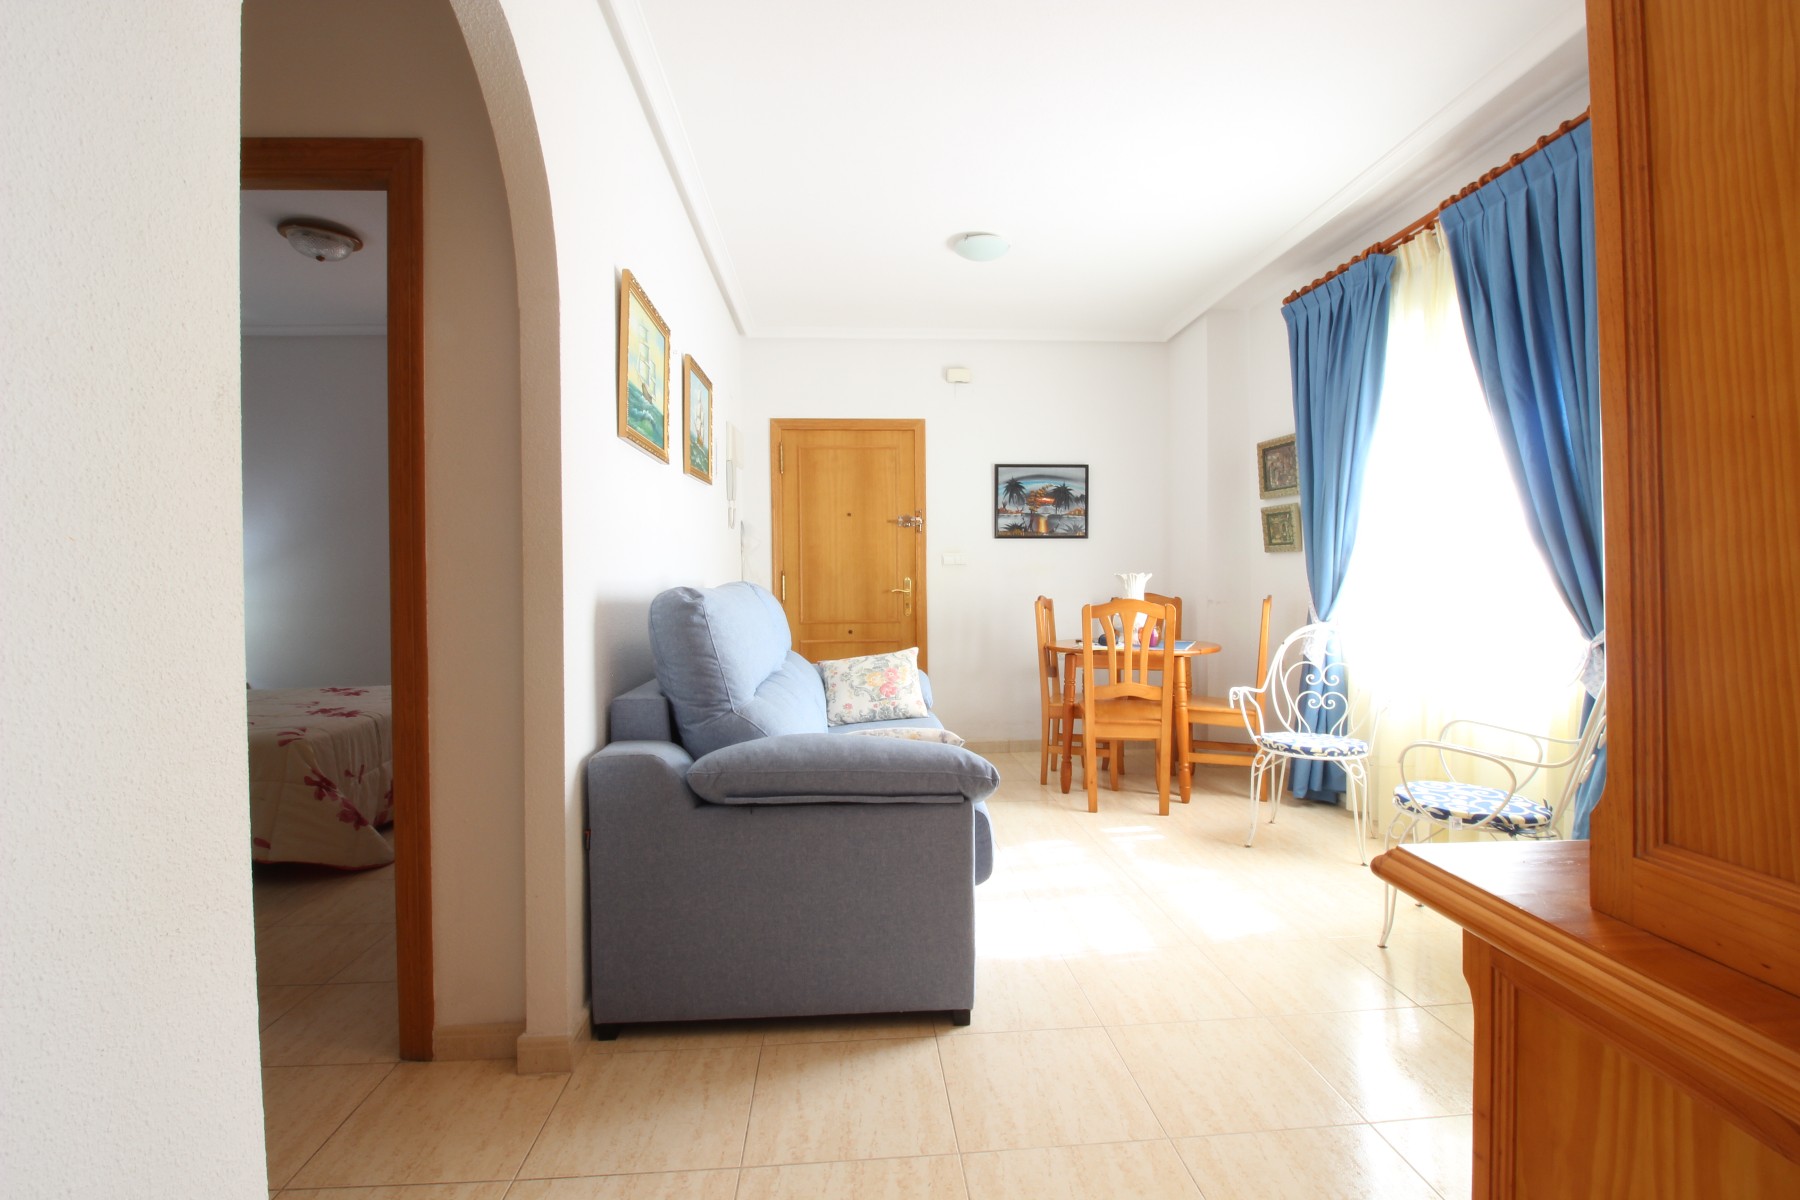 Vivienda de 1 dormitorio ideal para vacaciones in Nexus Grupo